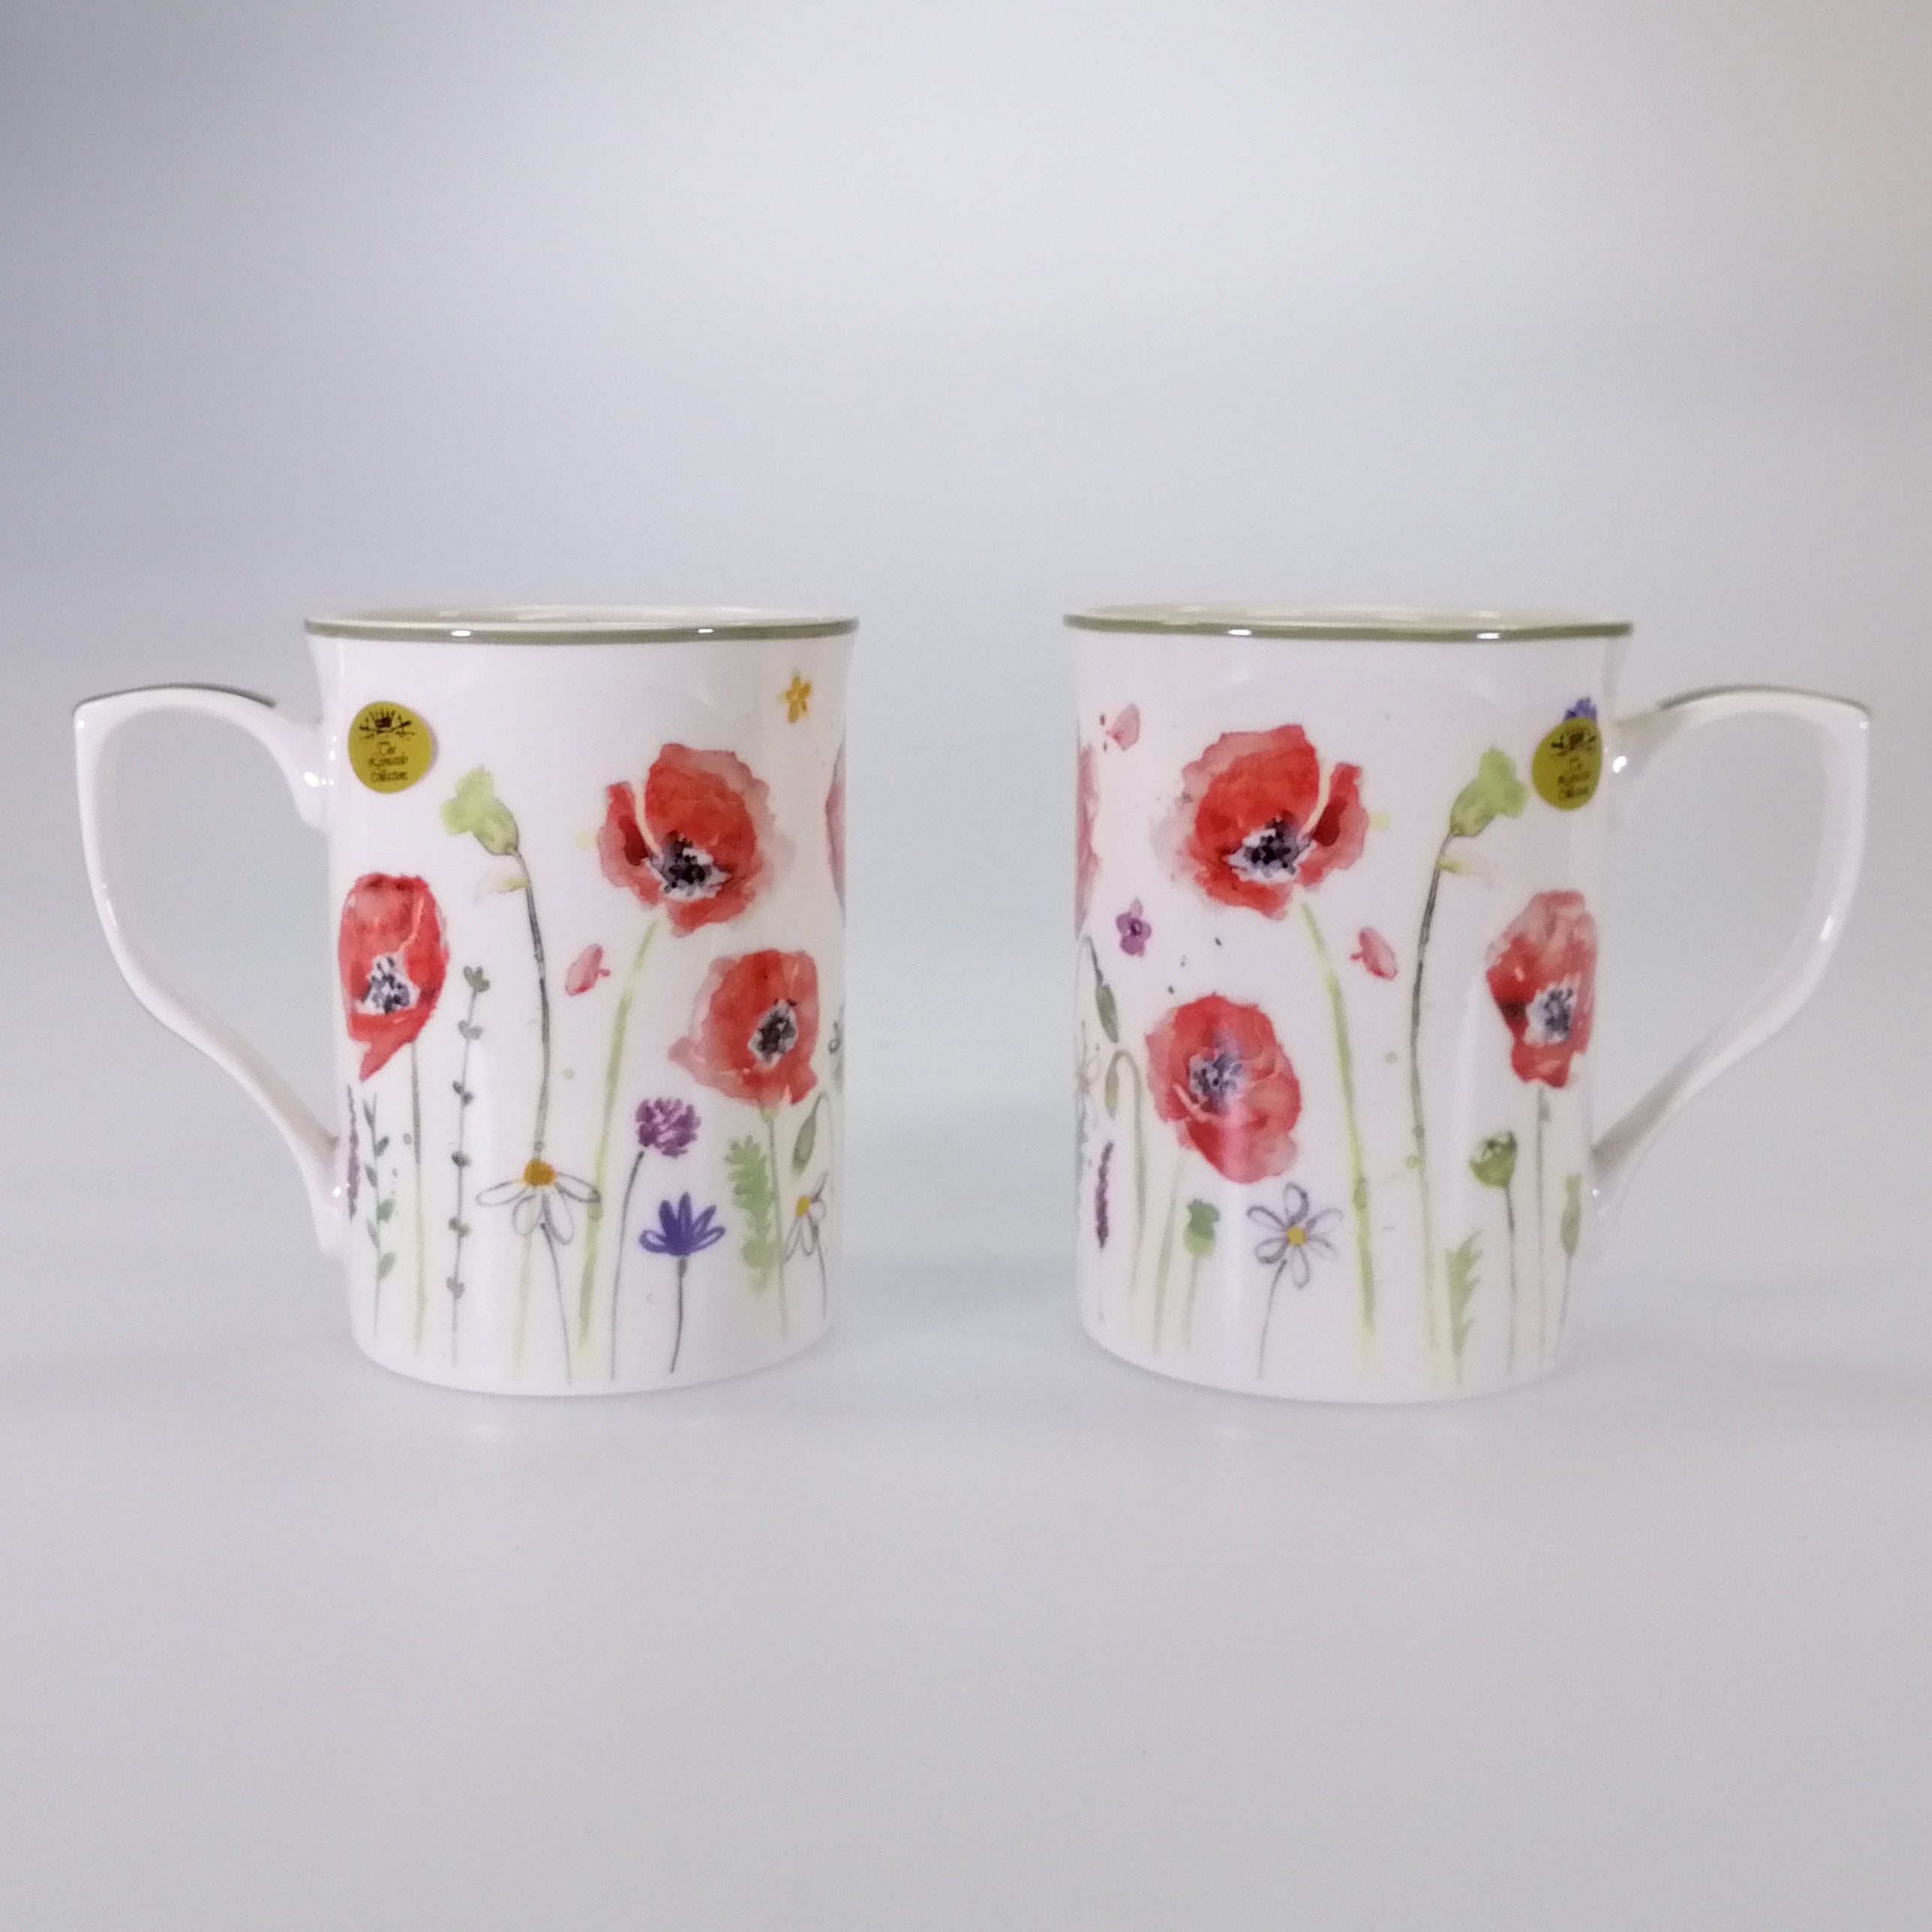 Poppy Fields Mug - Set of 2